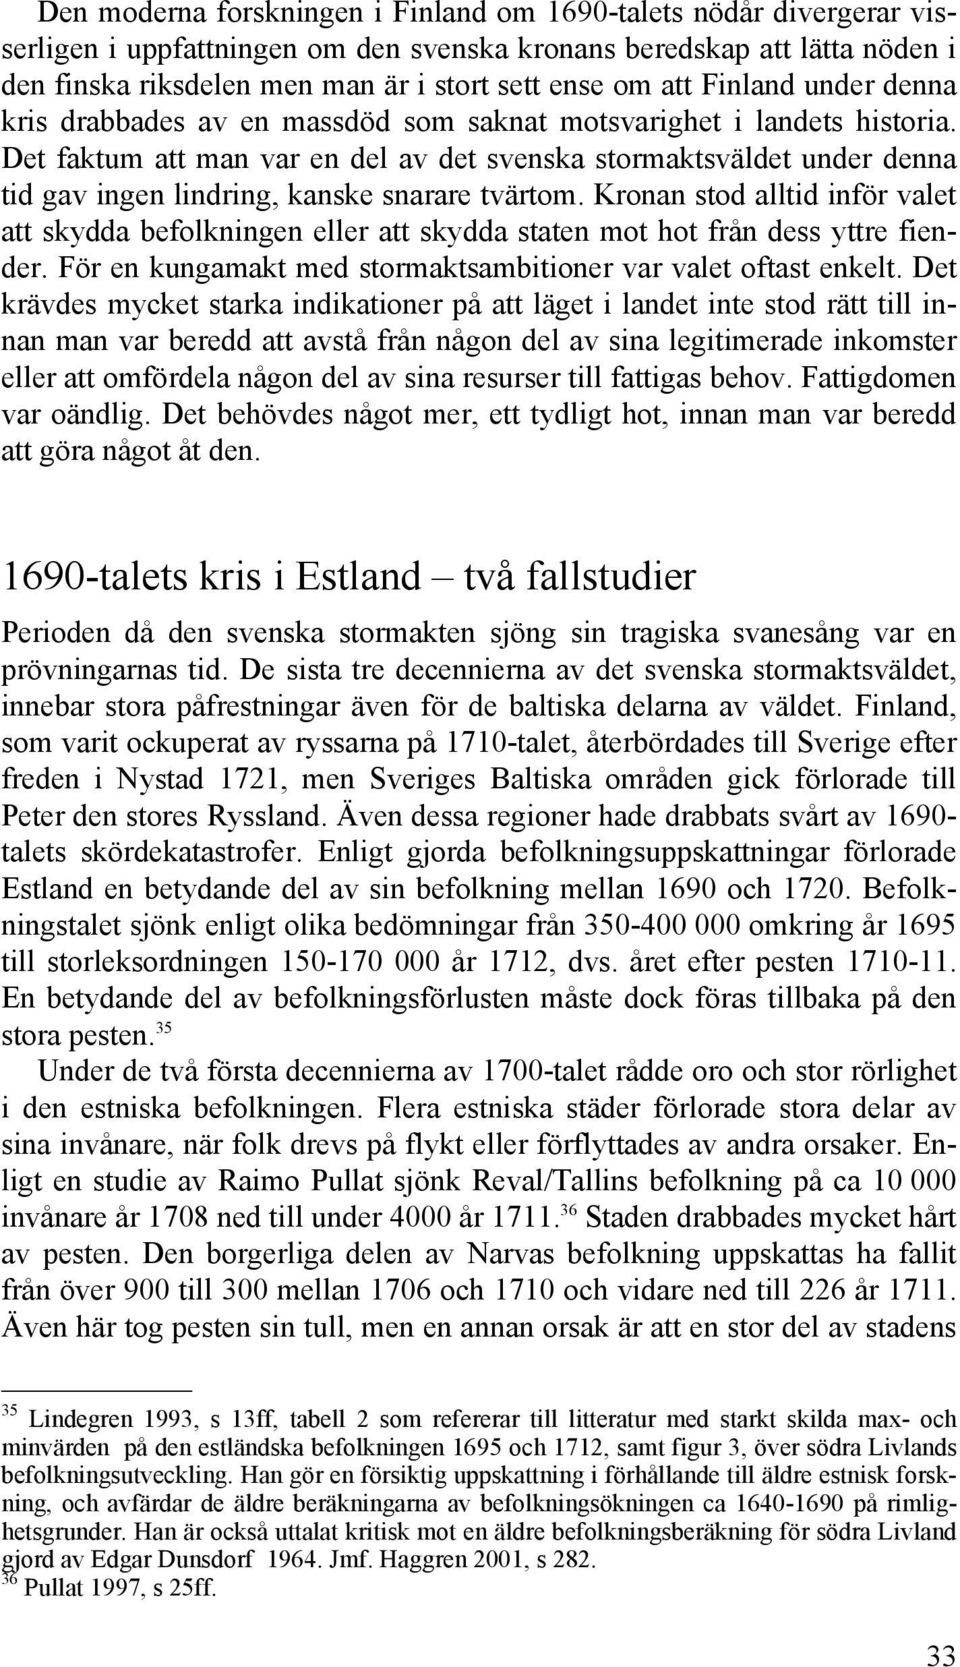 Det faktum att man var en del av det svenska stormaktsväldet under denna tid gav ingen lindring, kanske snarare tvärtom.